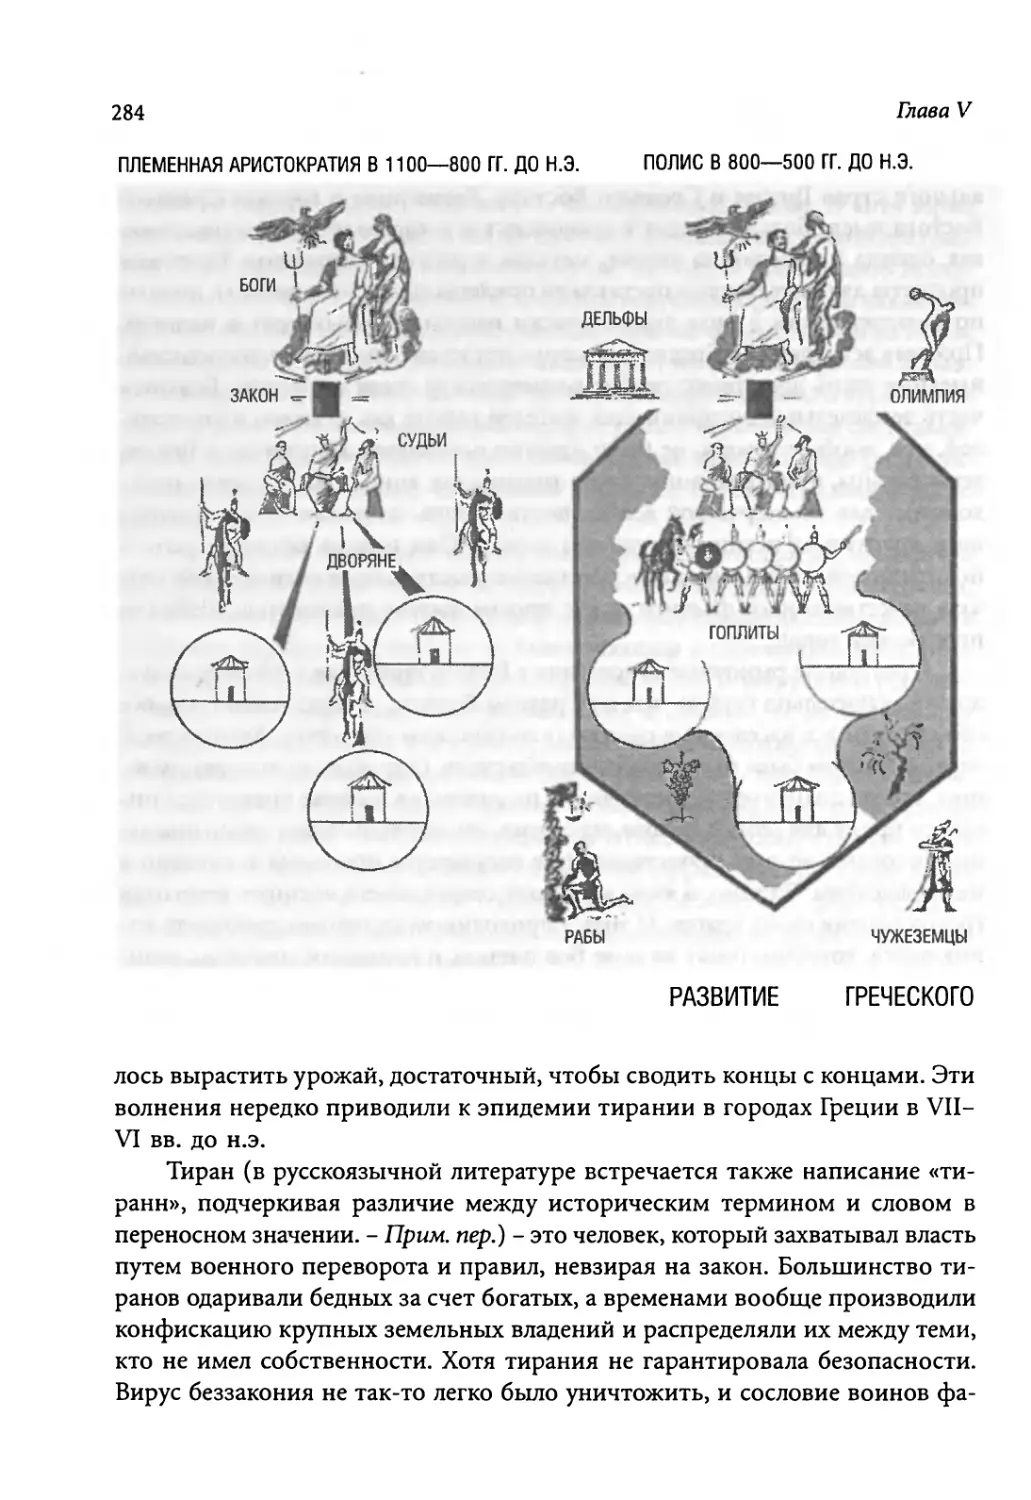 Развитие греческого общества [284-285]